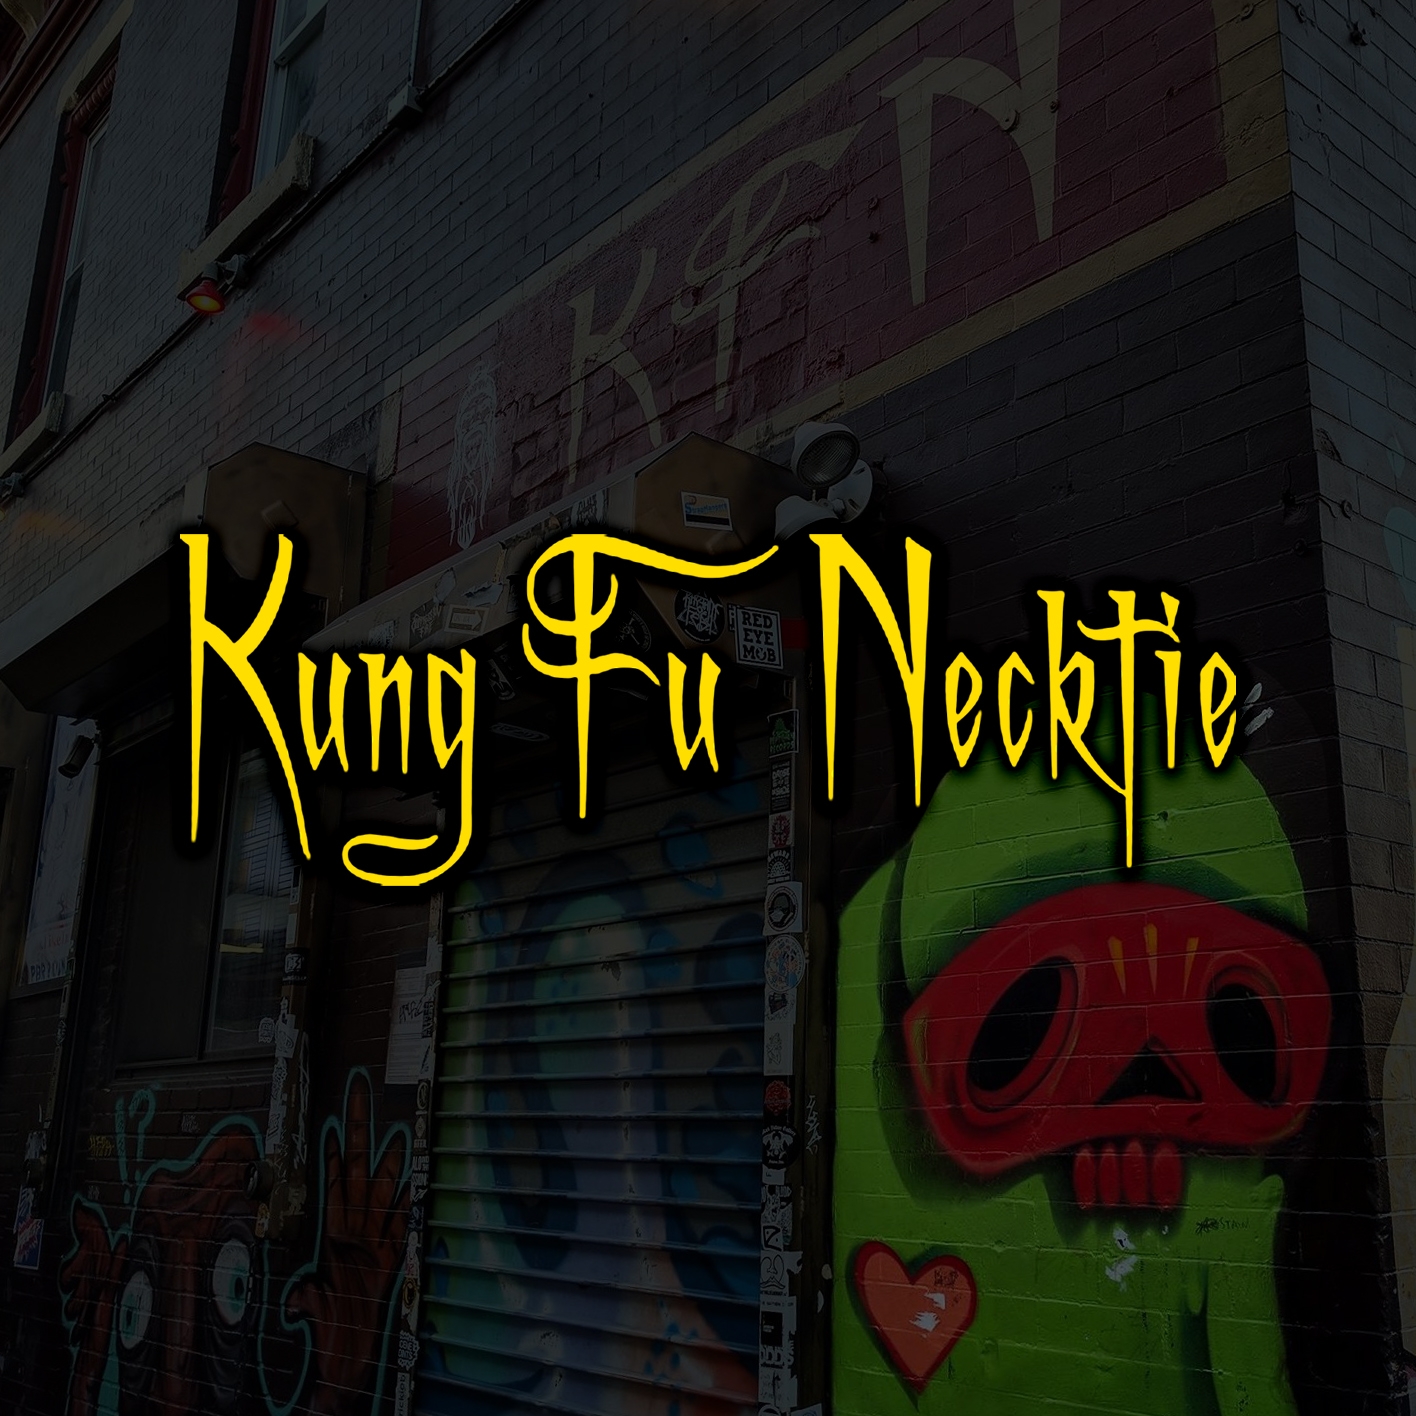 Kung Fu Necktie, 1248 North Front St